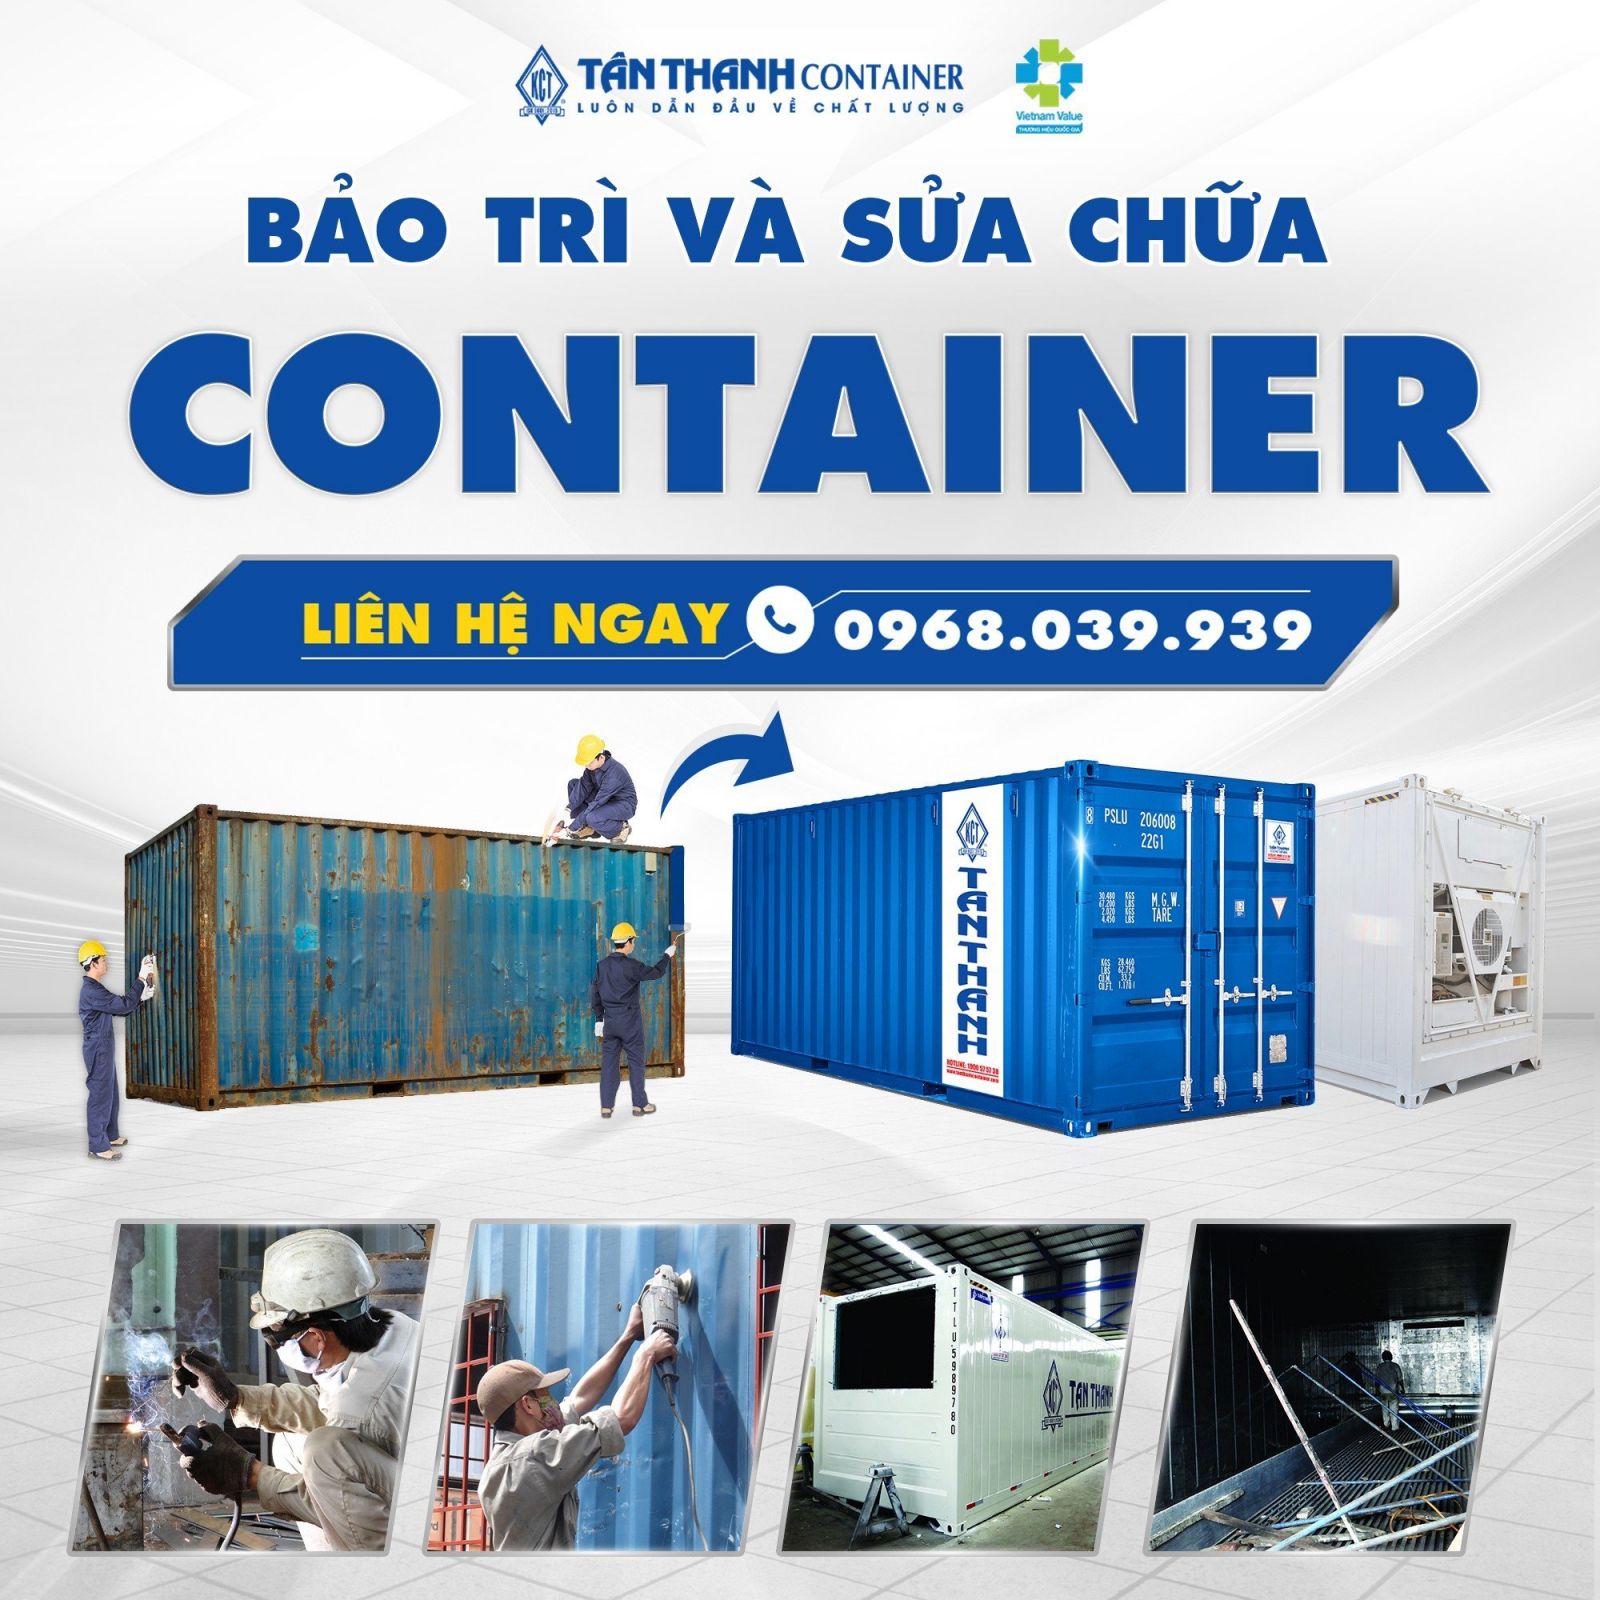 bảo trì container, bảo hành container